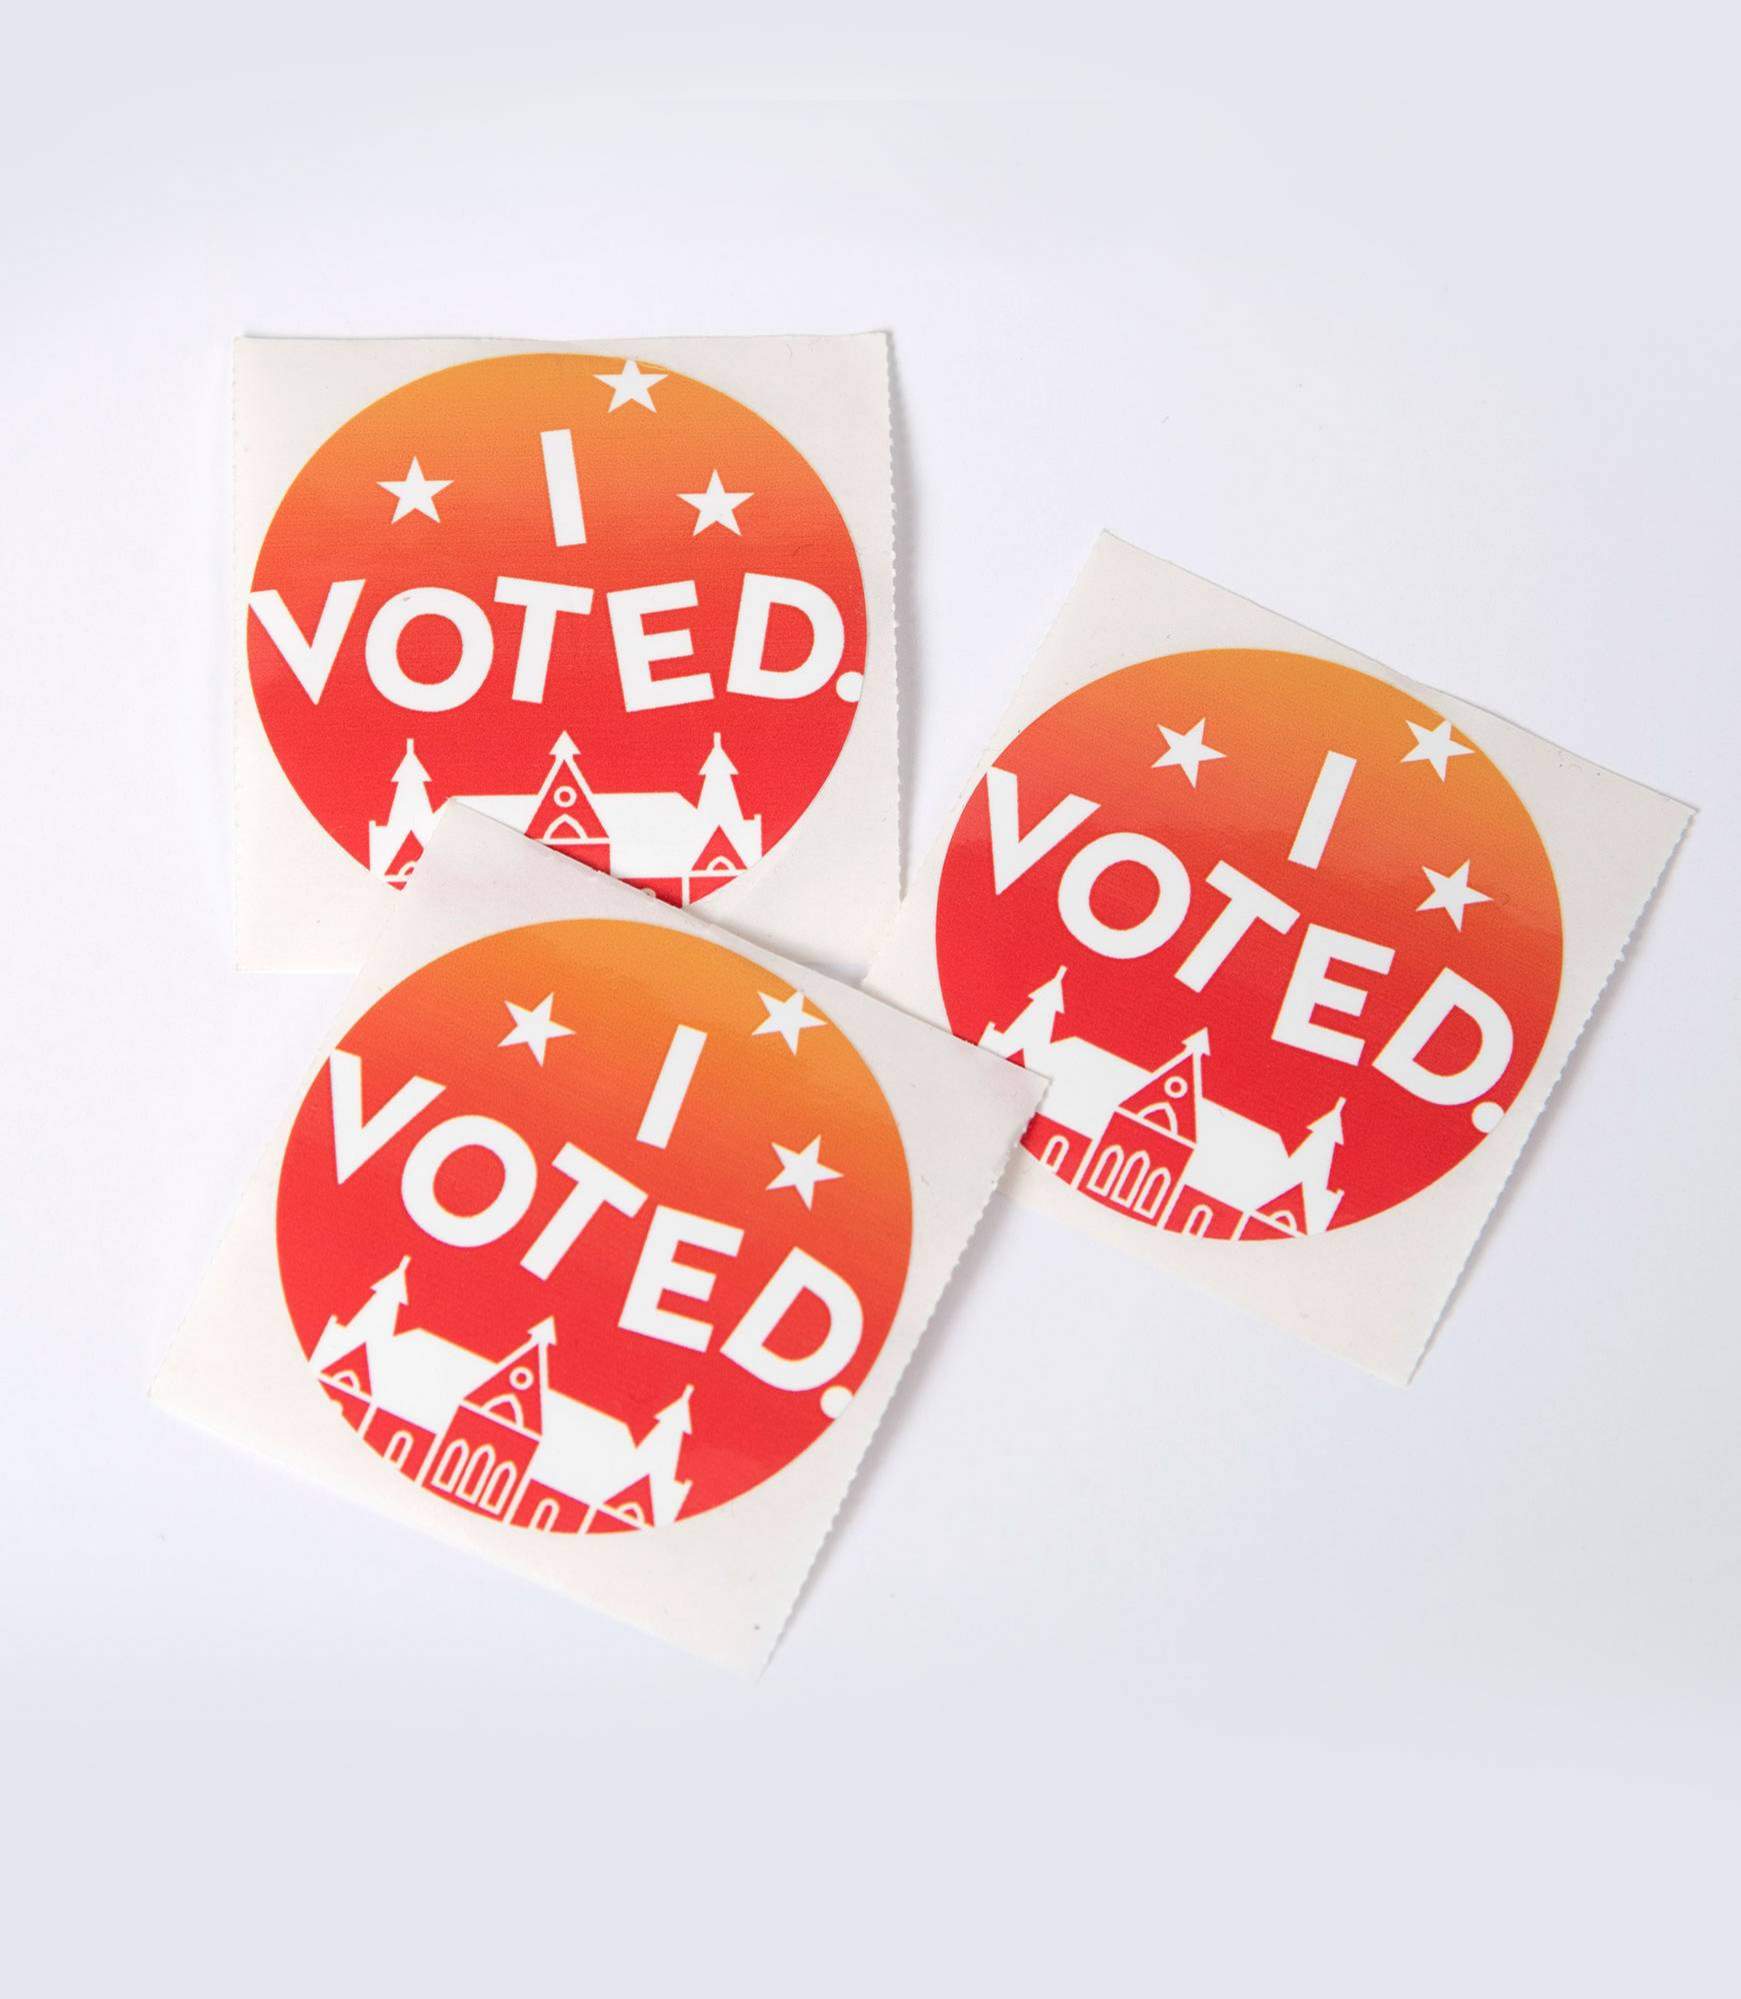 vote campaign I voted stickers